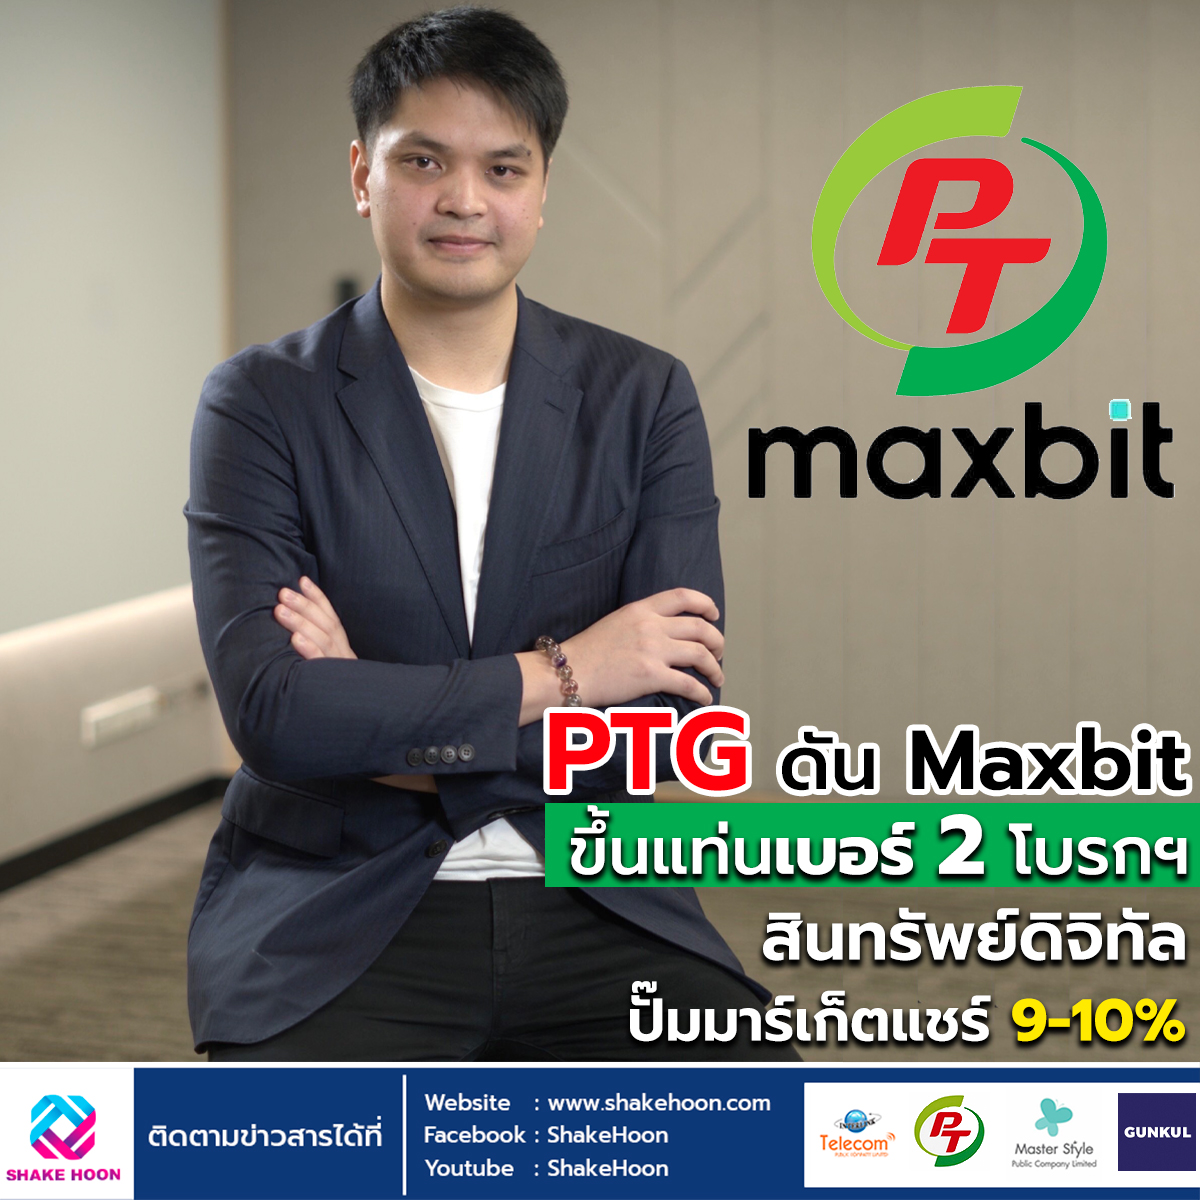 PTG ดัน Maxbit ขึ้นแท่นเบอร์ 2 โบรกฯ สินทรัพย์ดิจิทัล ปั๊มมาร์เก็ตแชร์ 9-10%